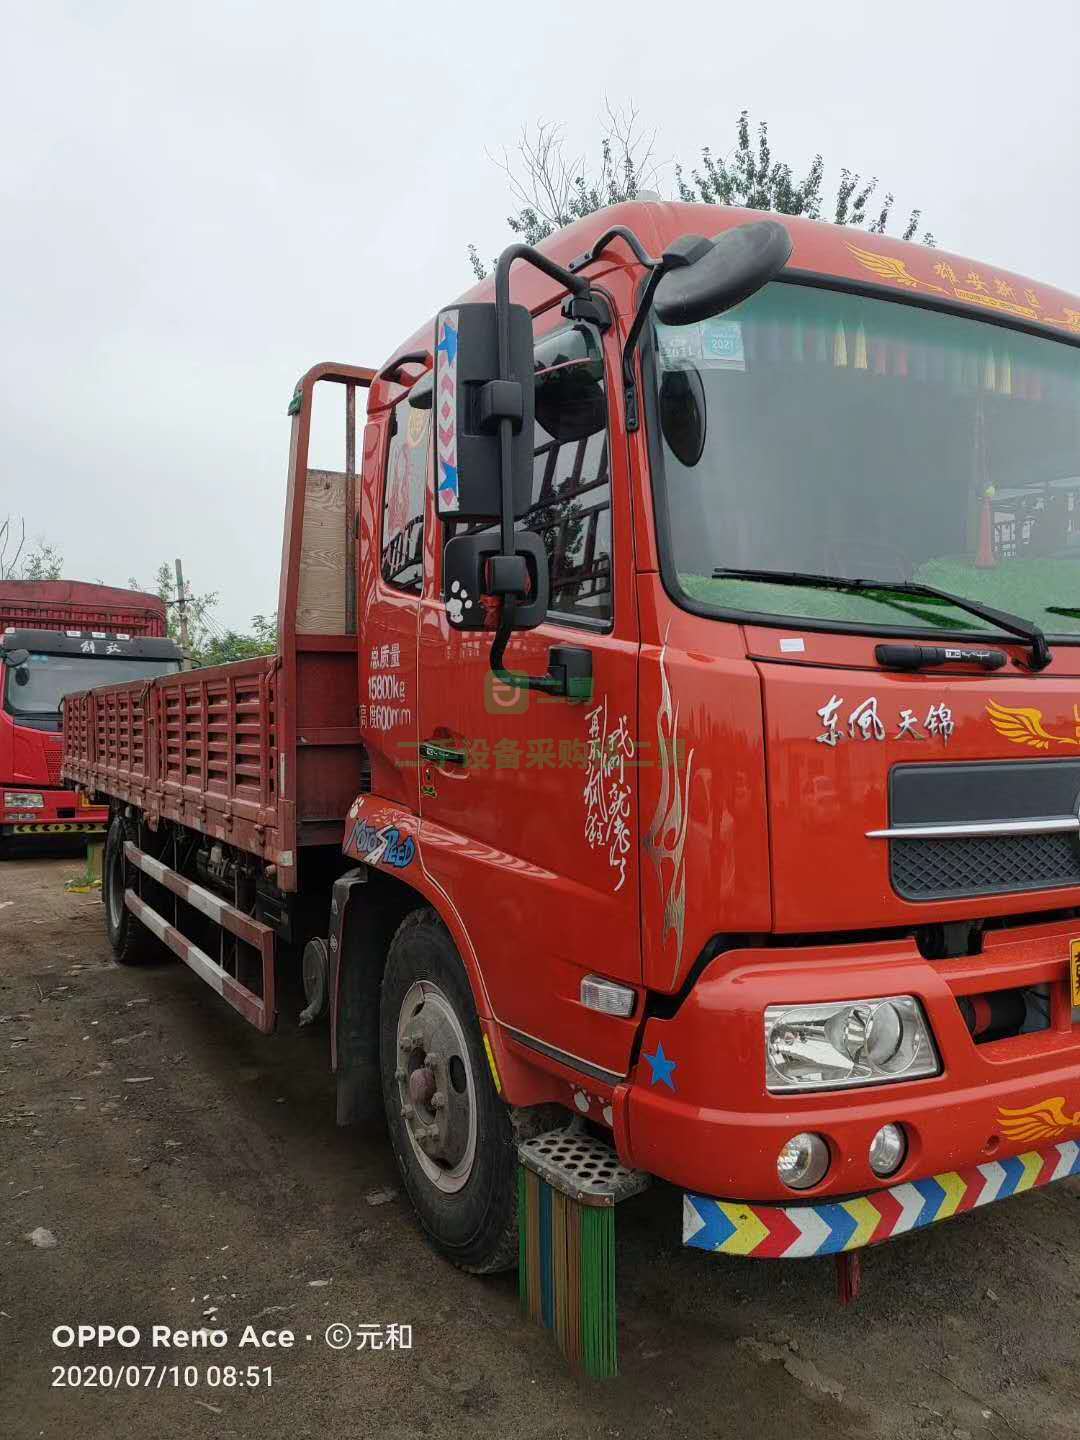 出售一台东风天锦6.8米平板货车出售,国五排放